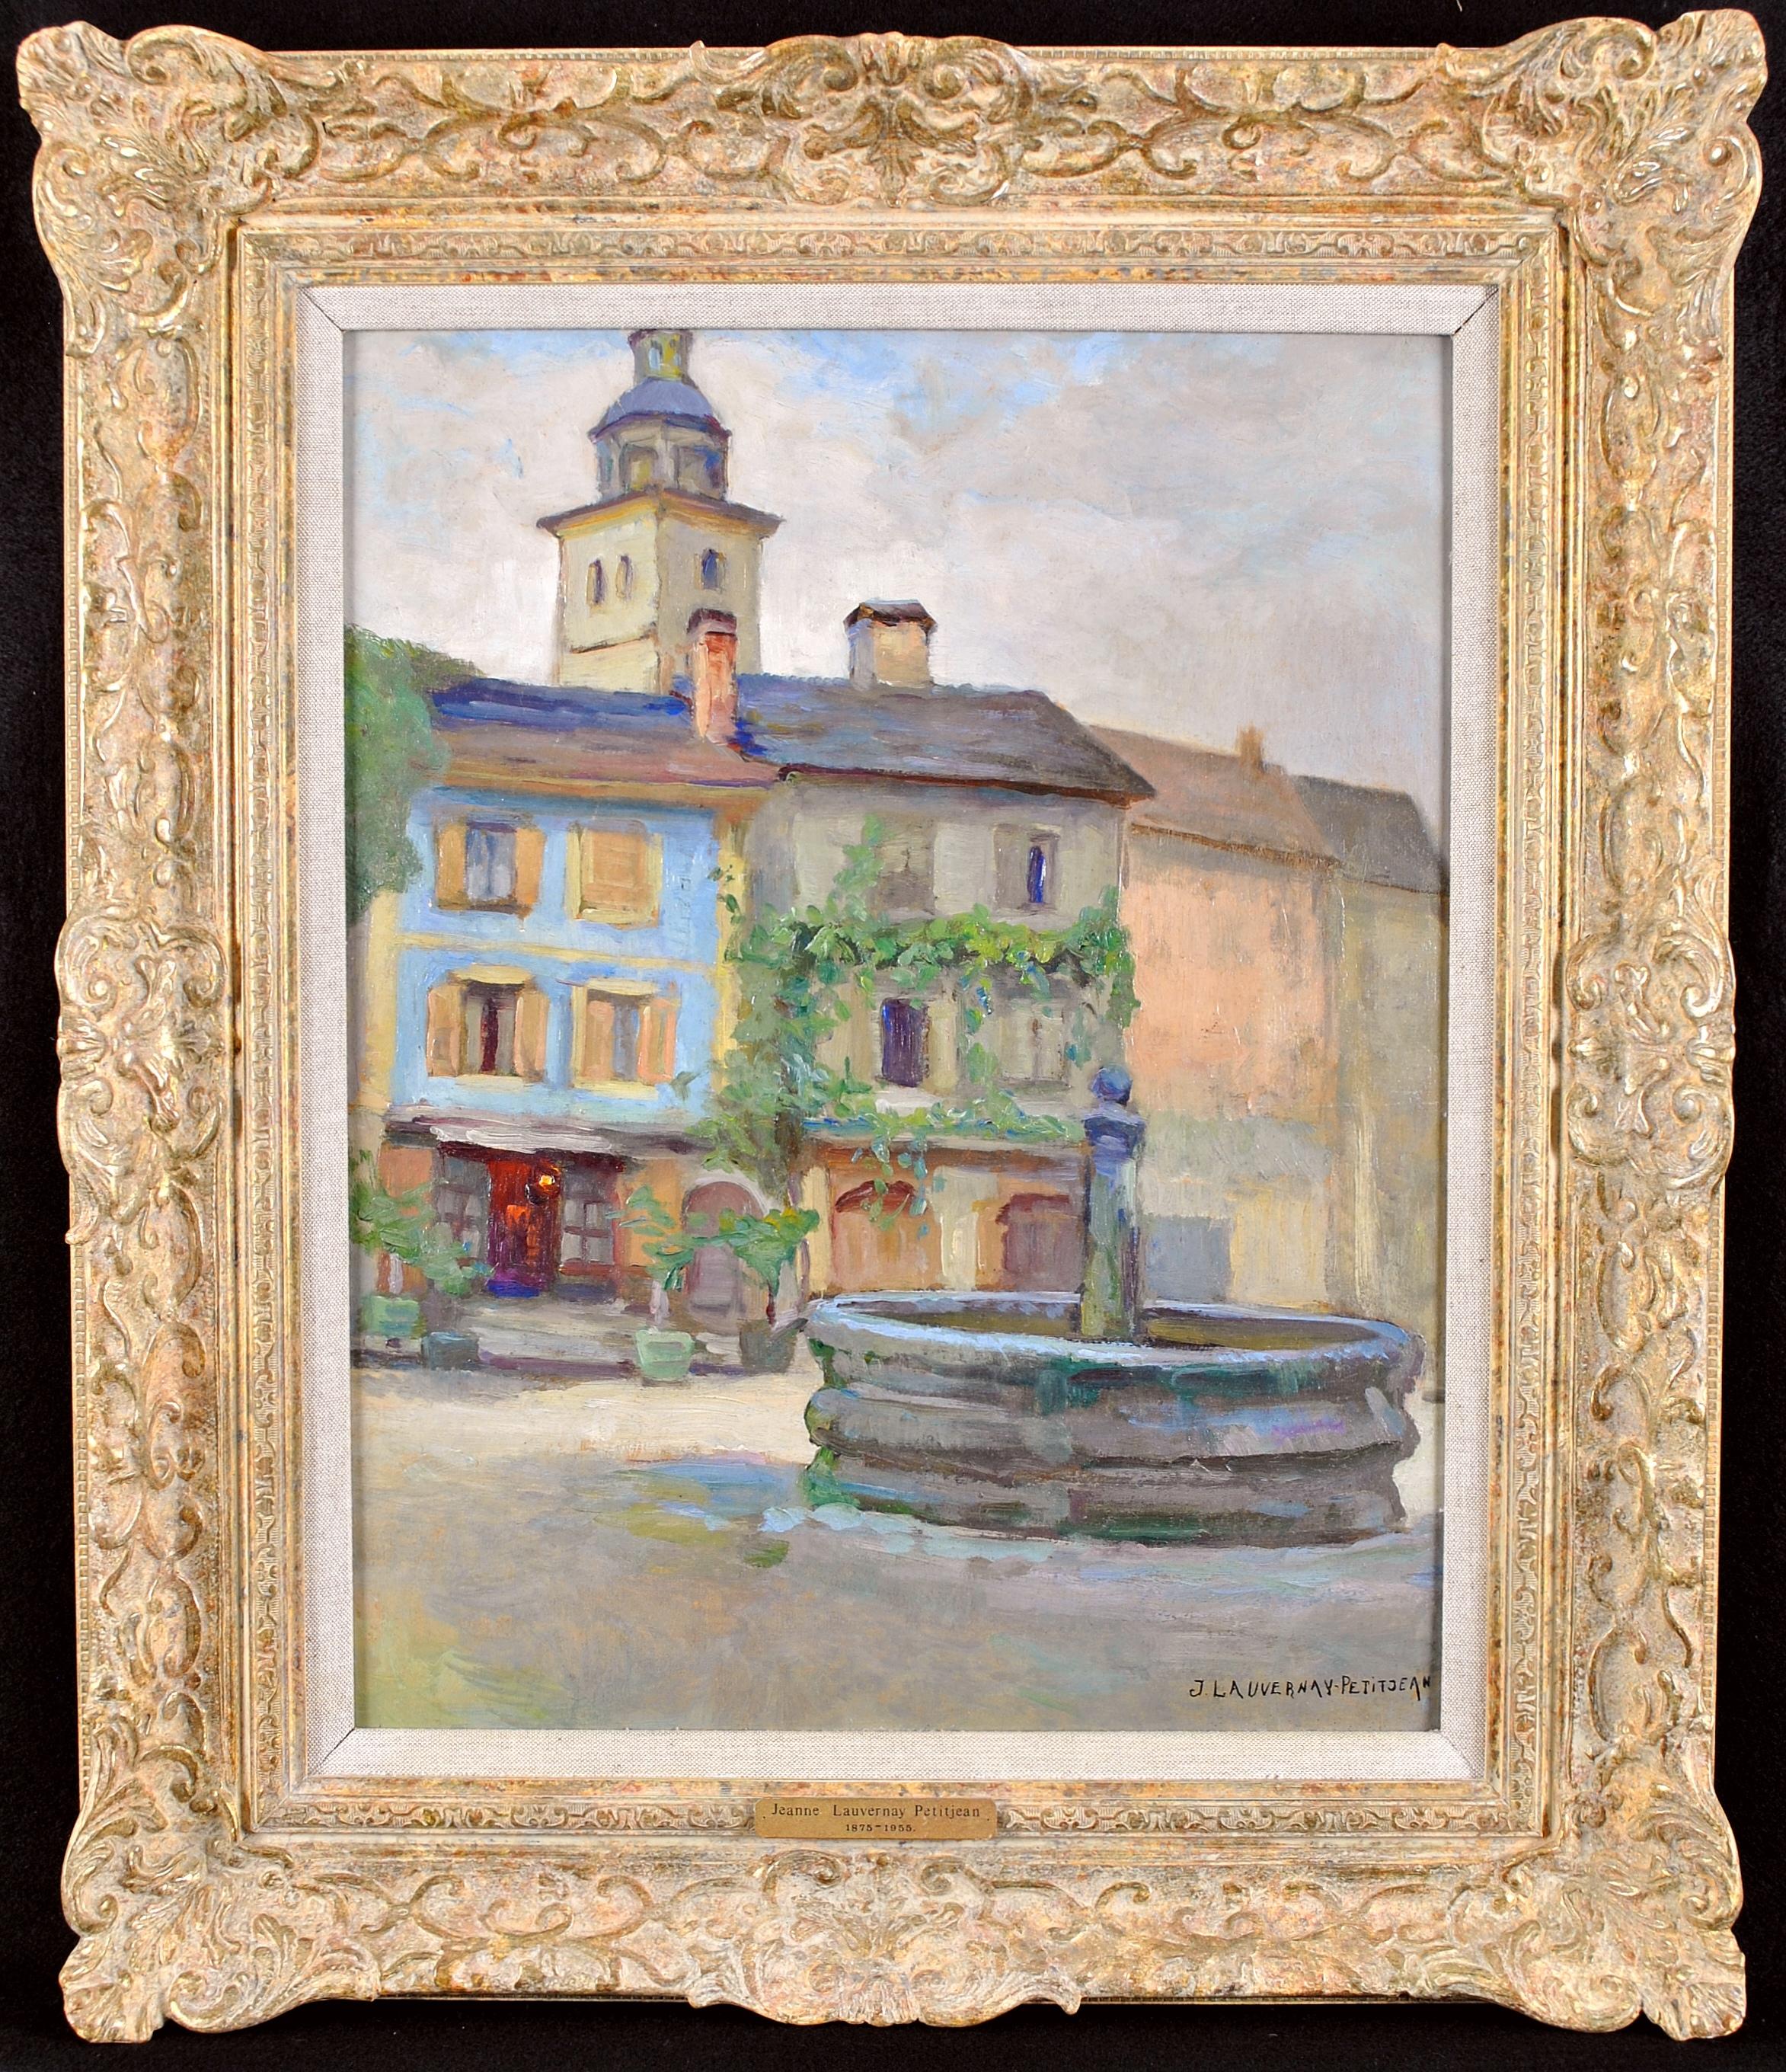 Landscape Painting Jeanne Lauvernay-Pettitjean - Le Puits - Paysage impressionniste français du 20e siècle